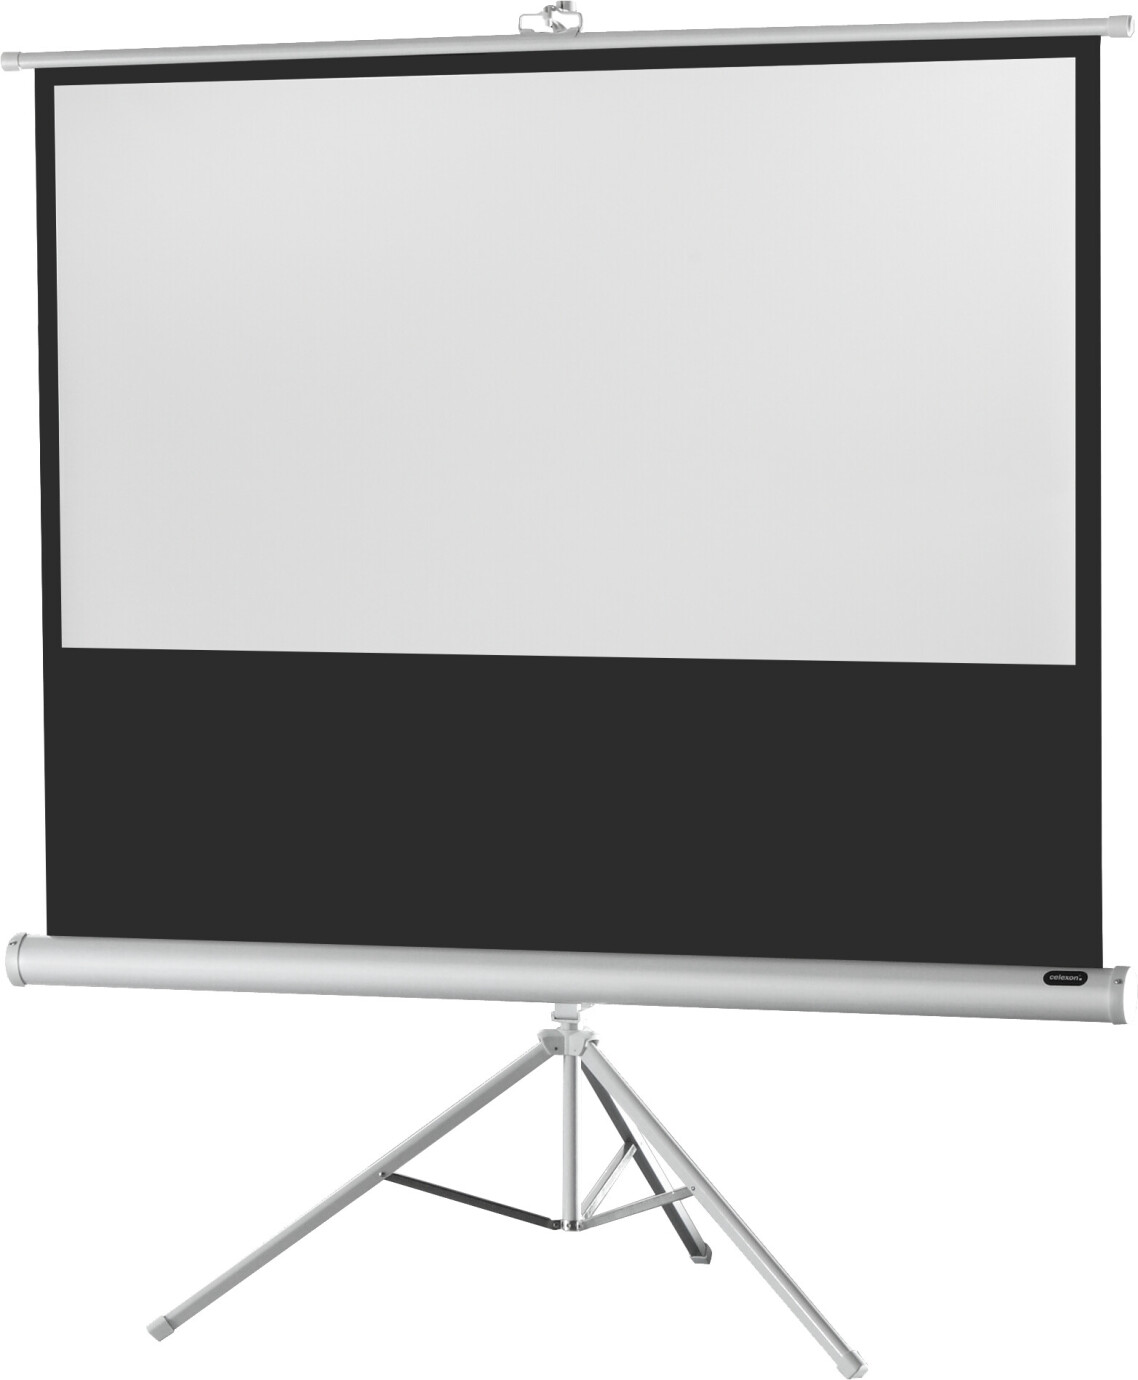 Ecran de projection sur pied celexon Economy 244 x 138 cm - White Edition